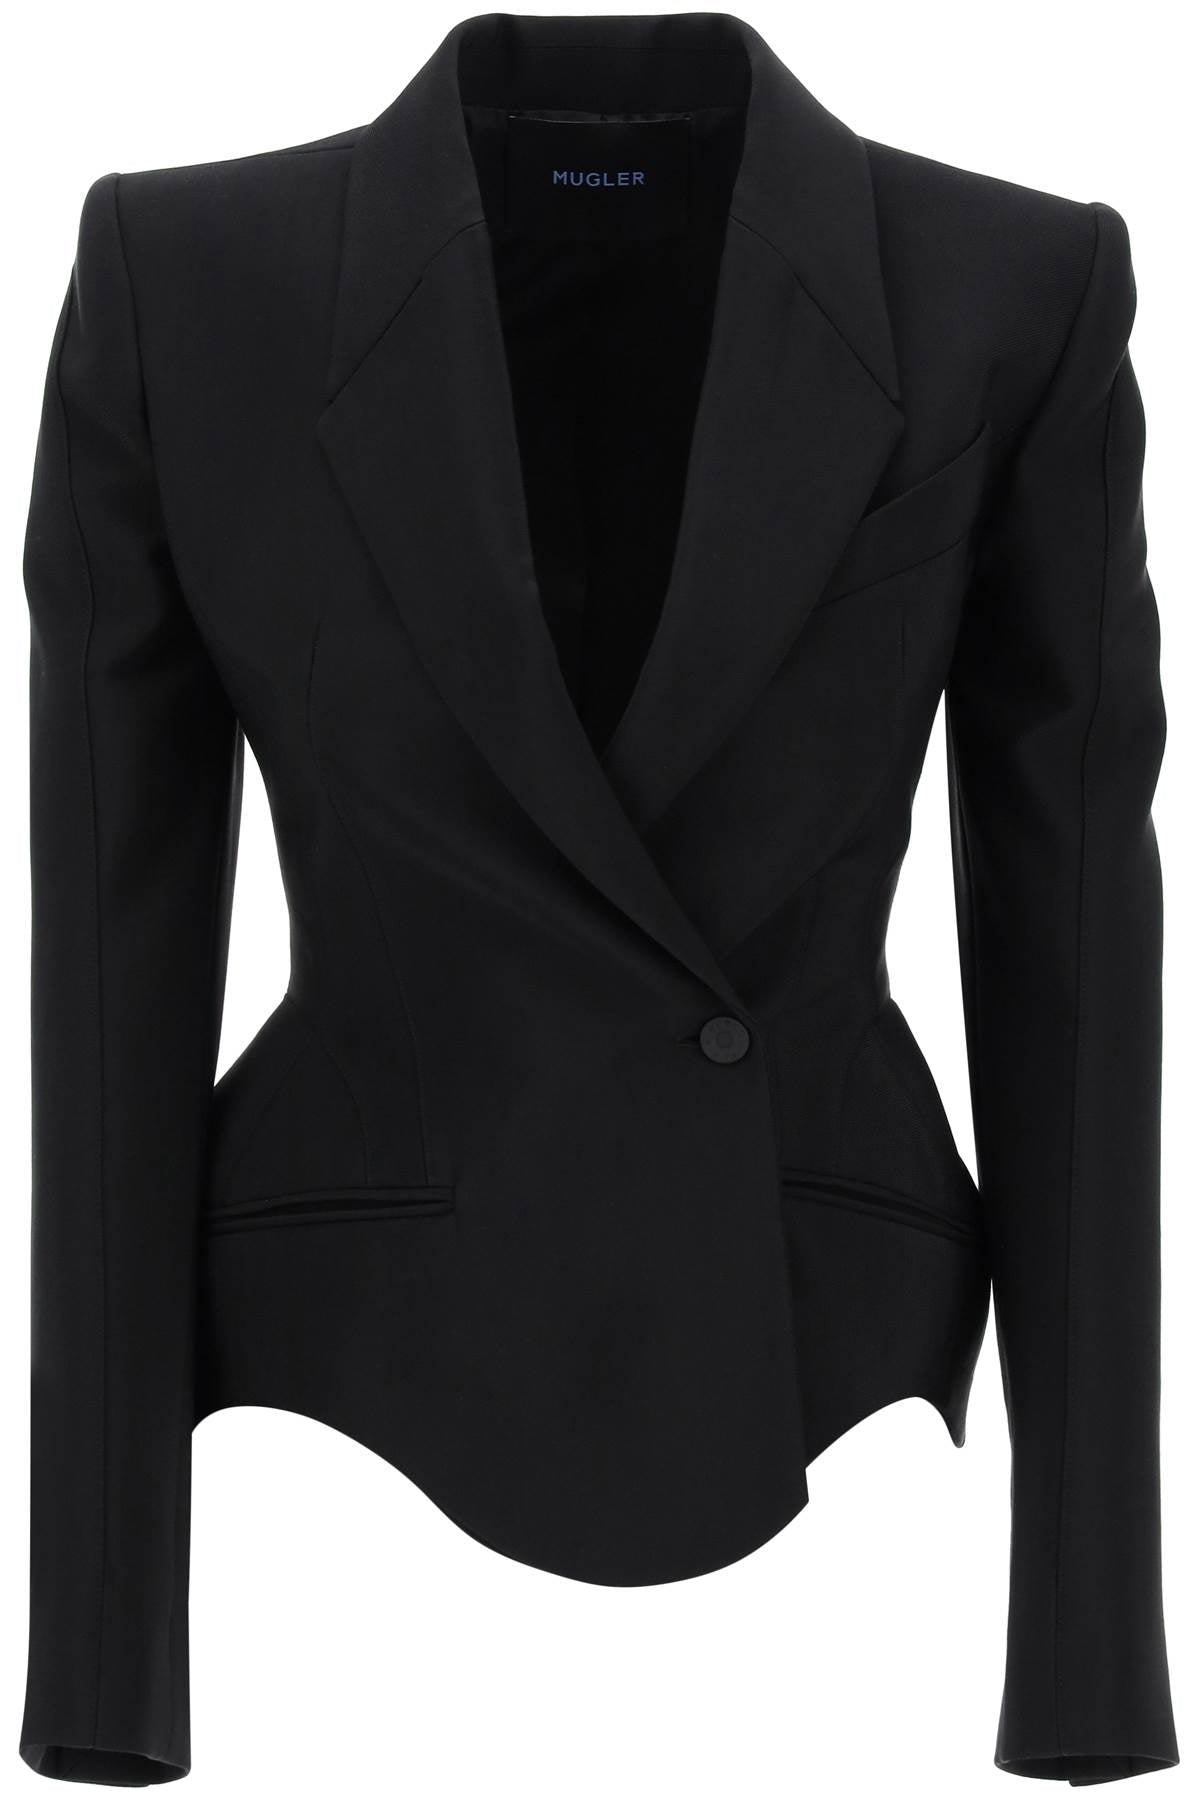 Áo khoác đen cổ điển cho phụ nữ - Bộ sưu tập SS24